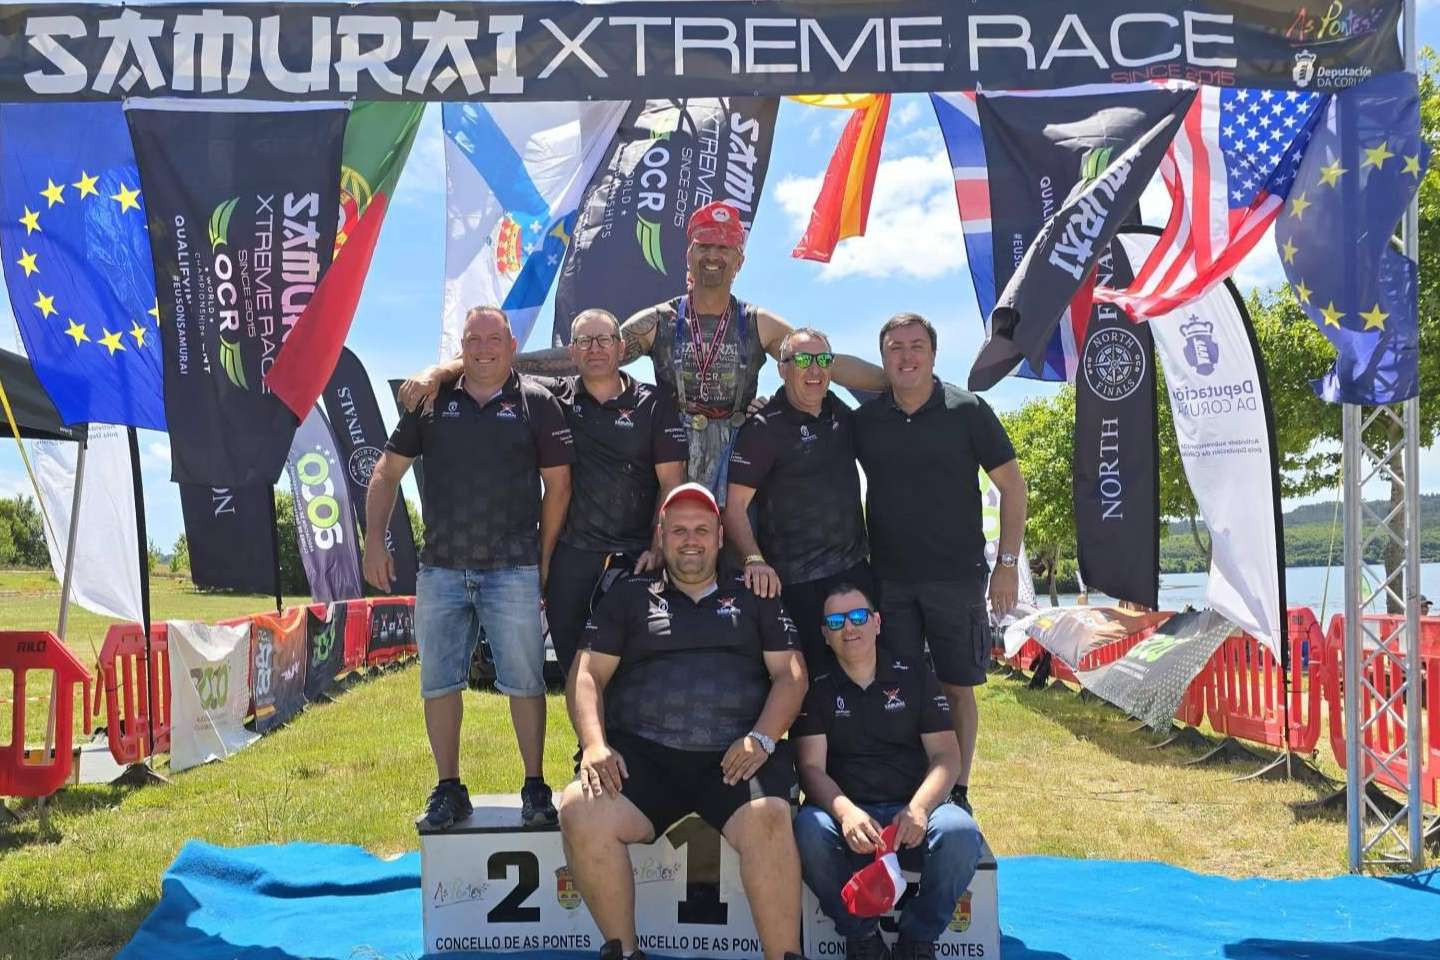  Samurai Xtreme Race muestra su compromiso con la igualdad de género en el deporte, la sostenibilidad y la solidaridad 